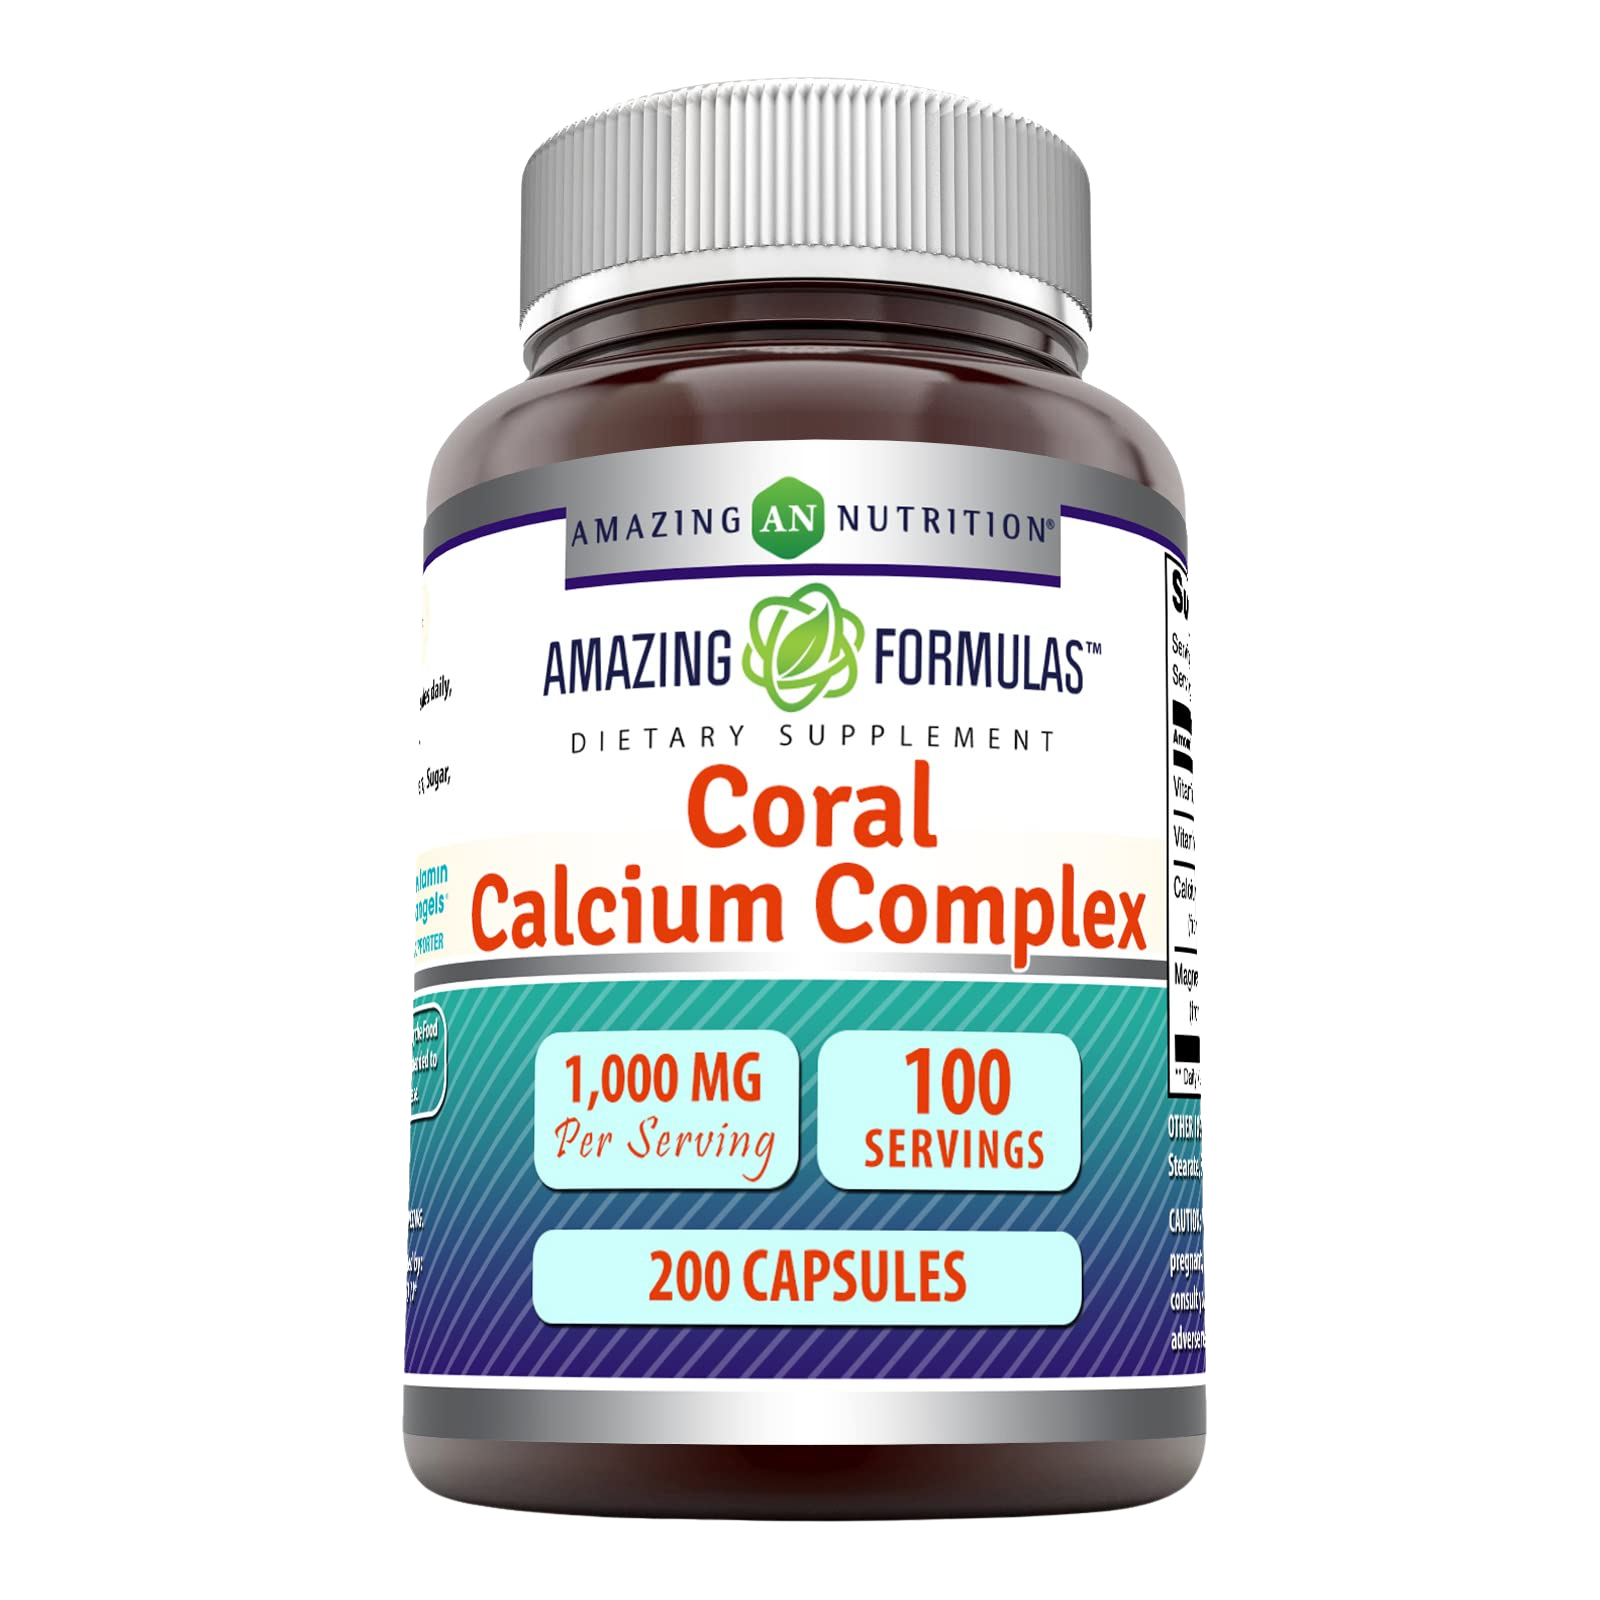 Amazing Formulas Coral Calcium Complex Supplement